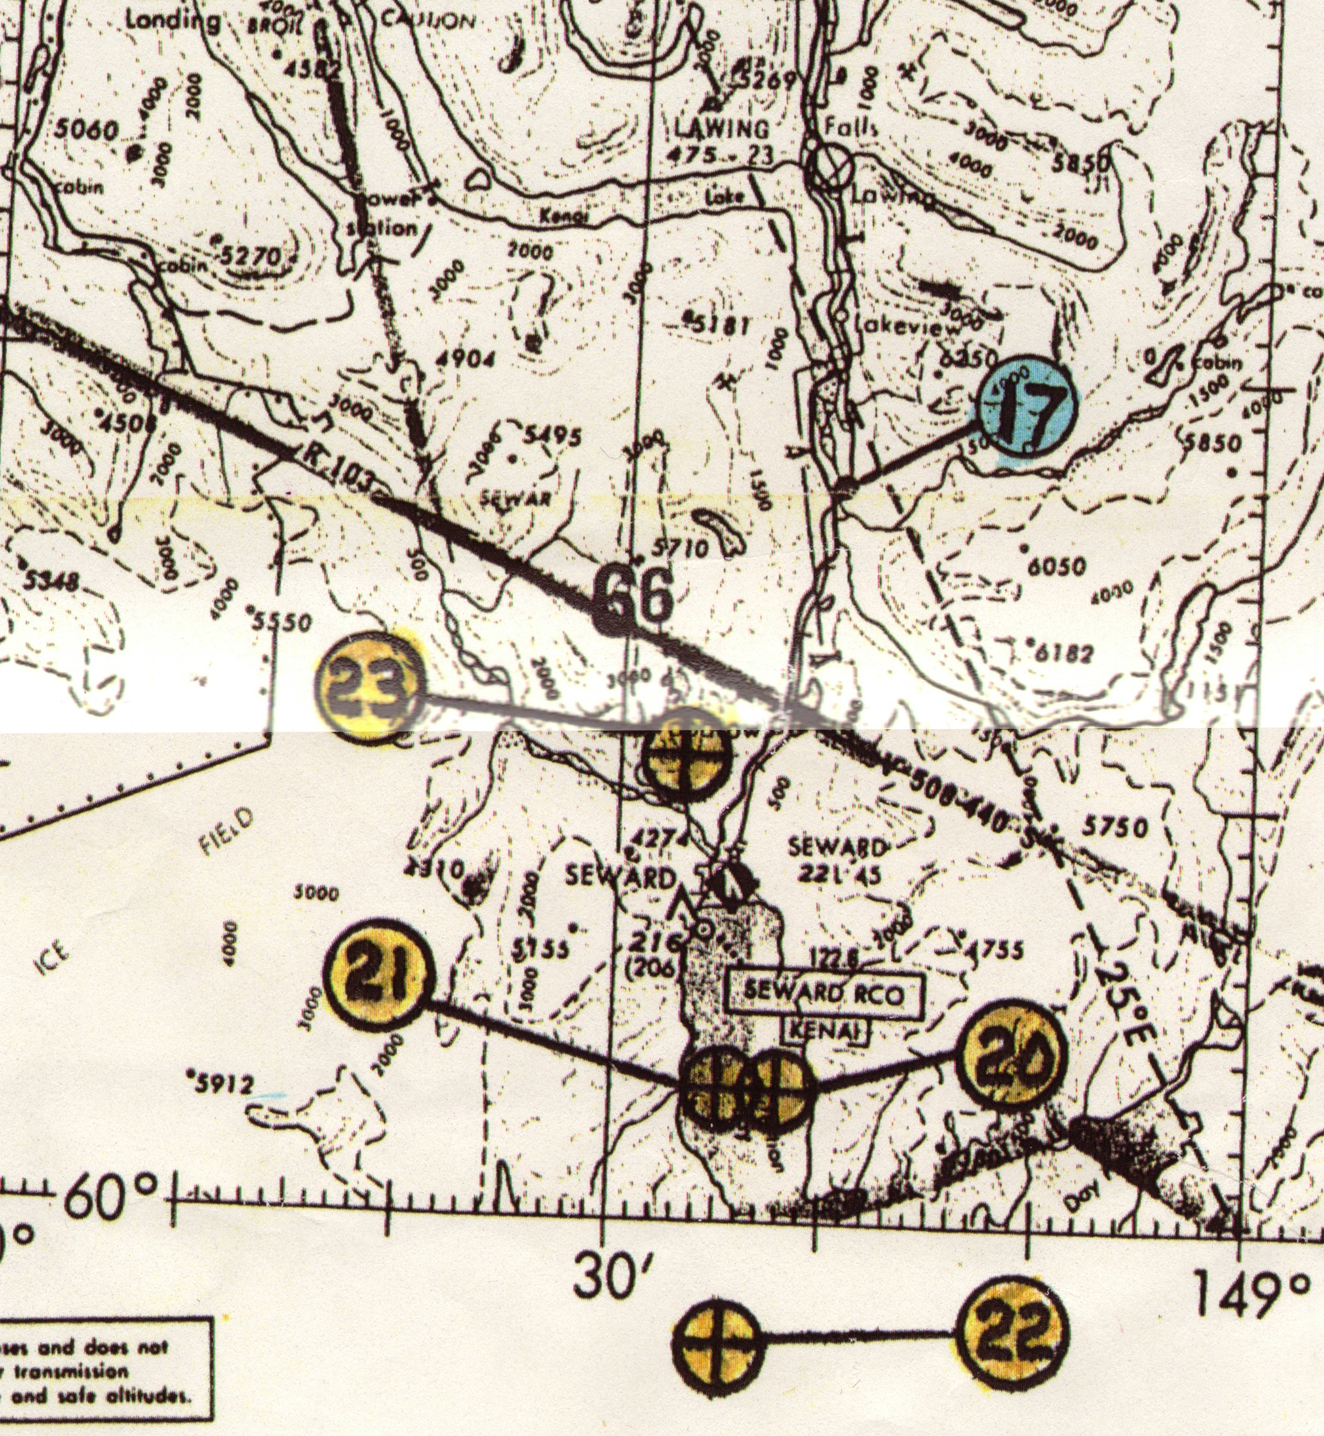 Sgt. Glenn Flothe's version of Hansen's flight map